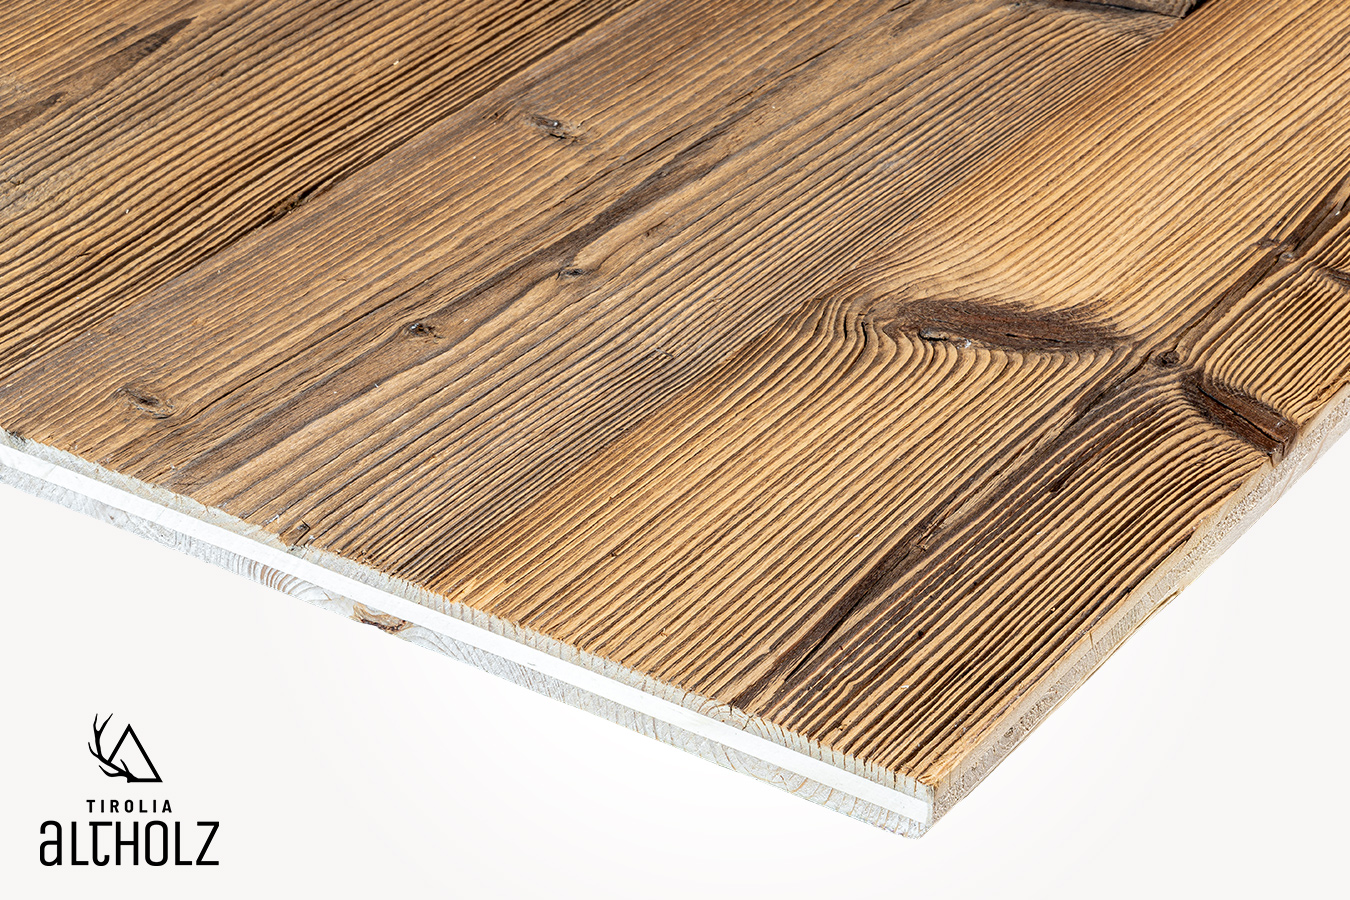 Altholz Dreischichtplatte mit gebürsteter Oberfläche im Farbton Braun kaufen